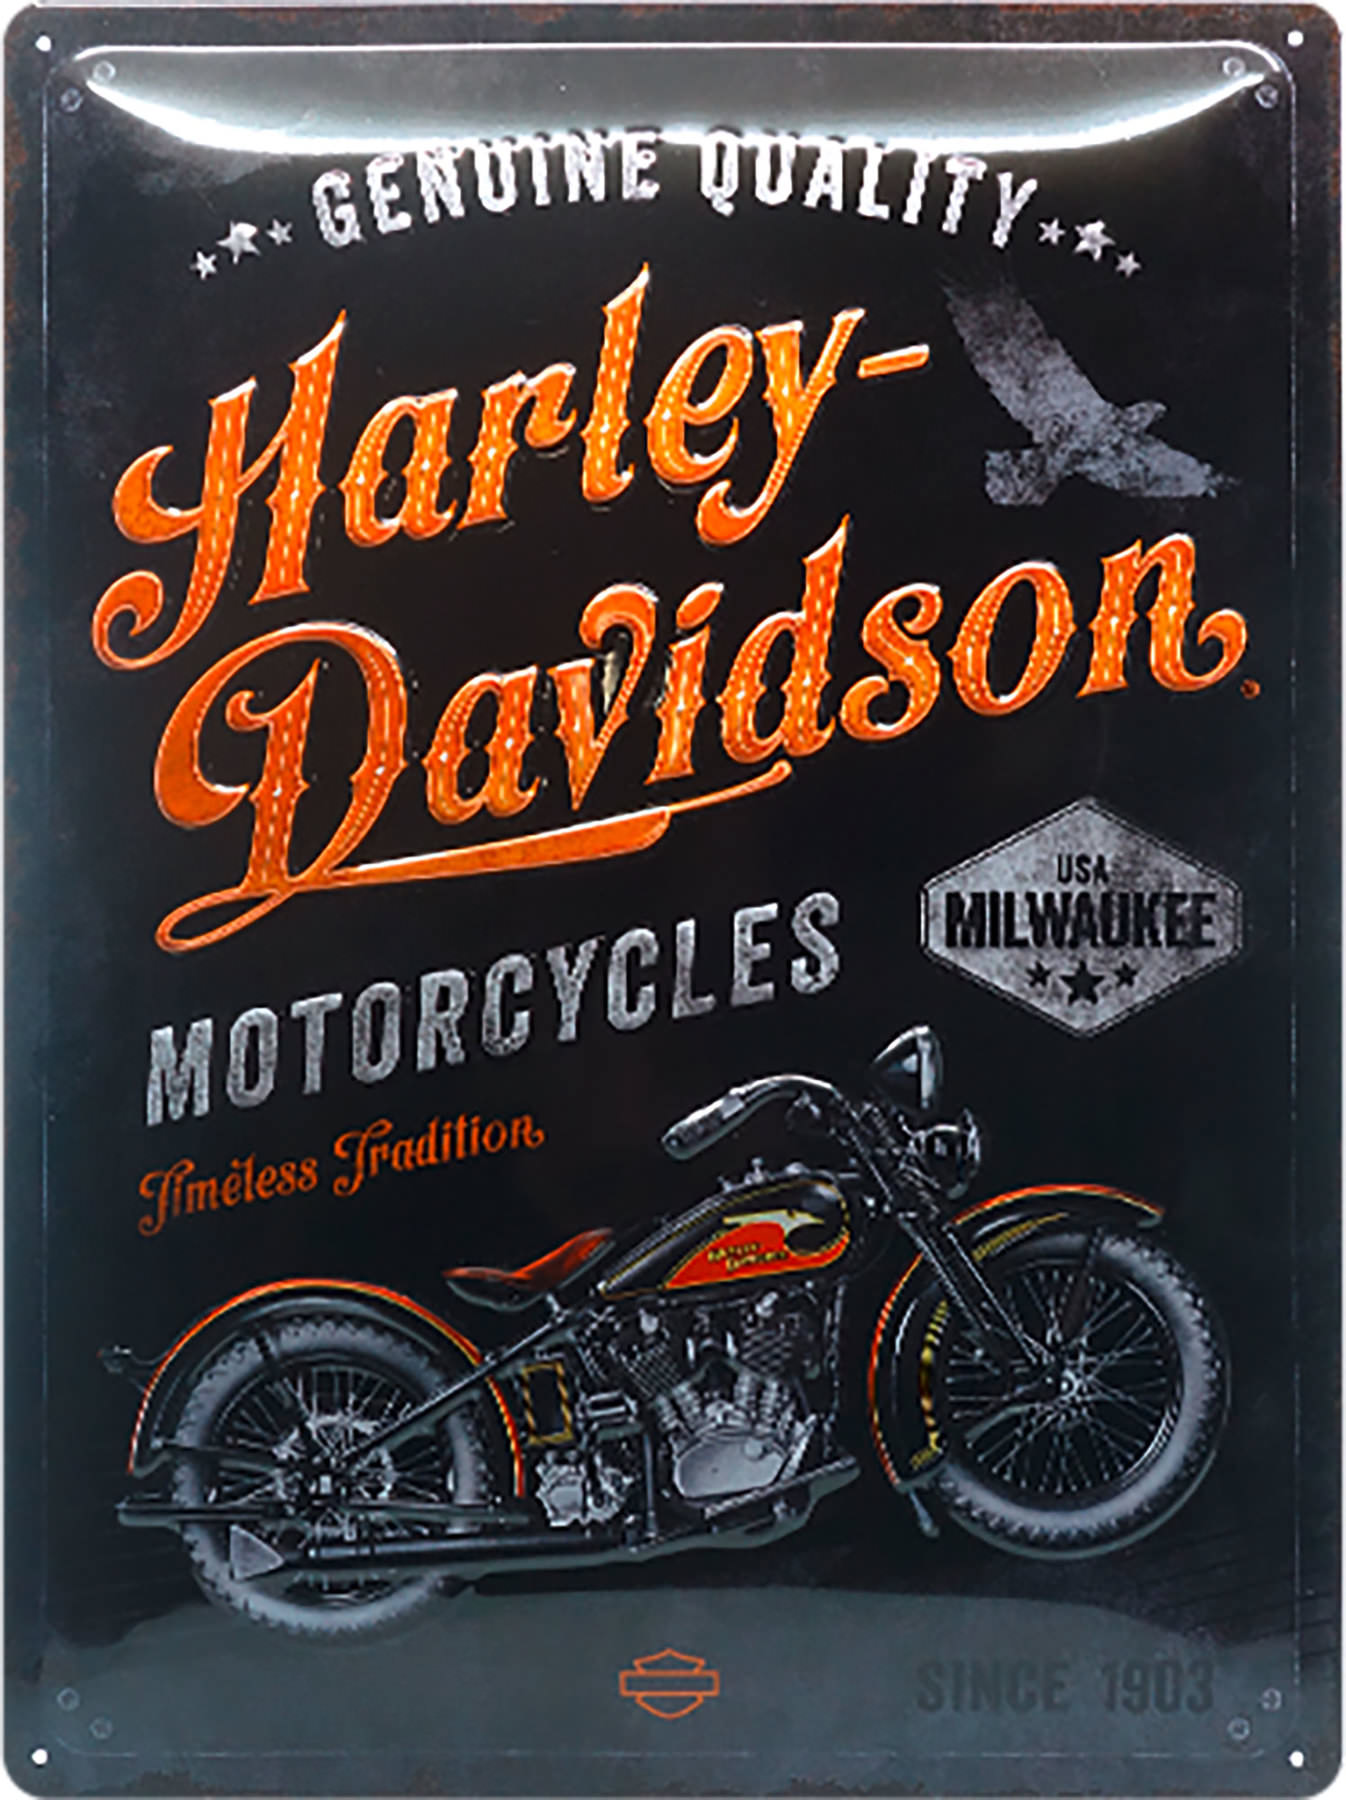 Harley Davidson Retro Vintage 3D Metal Wall Sign Garage Motorcycle Bike Gas 